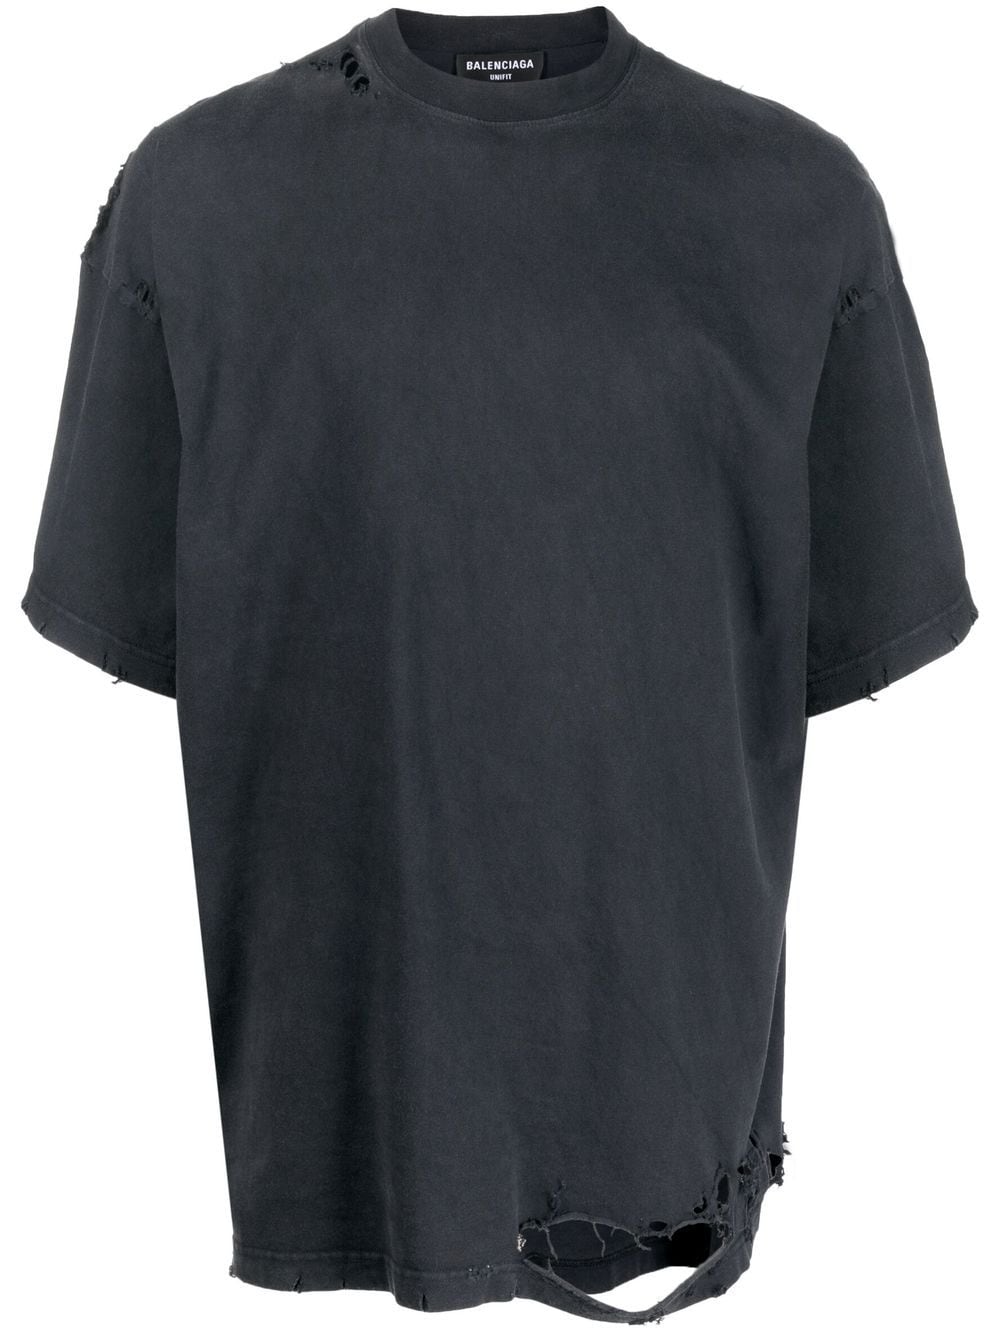 Balenciaga Gerafeld T-shirt - Zwart